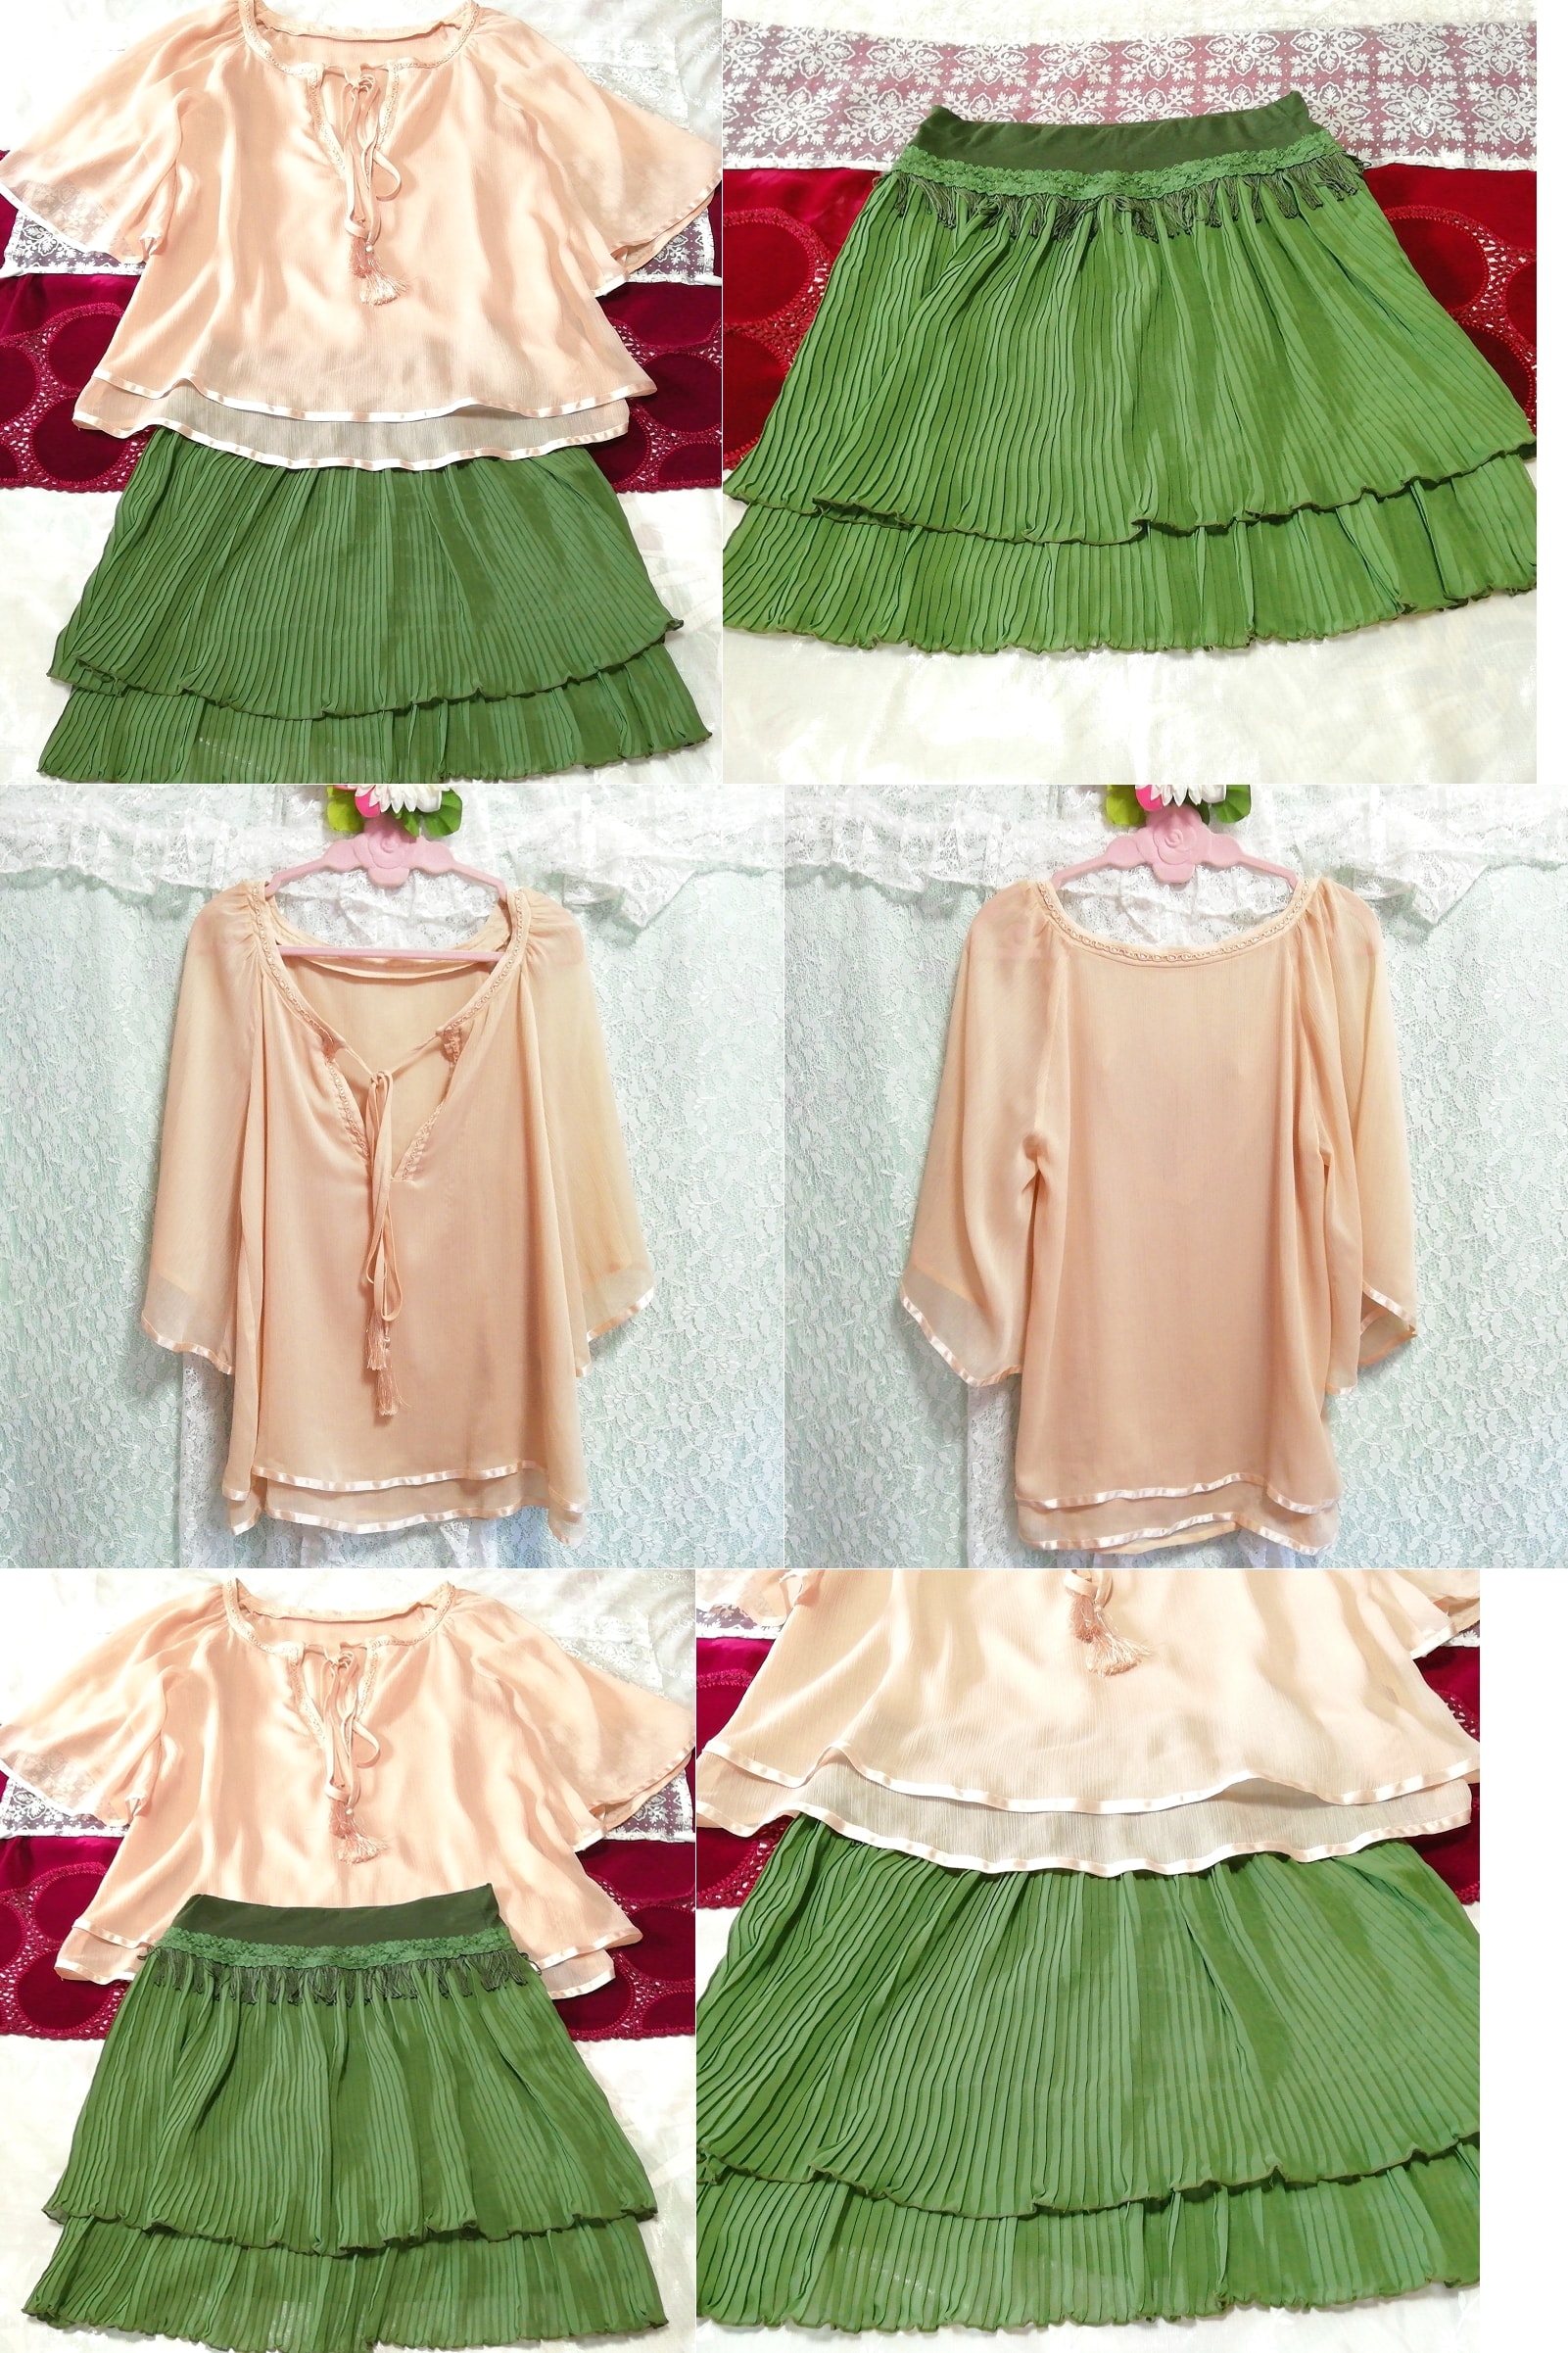 الوردي البيج الشيفون سترة رداء ثوب النوم الأخضر تنورة قصيرة مطوي, موضة, أزياء السيدات, ملابس نوم, لباس نوم